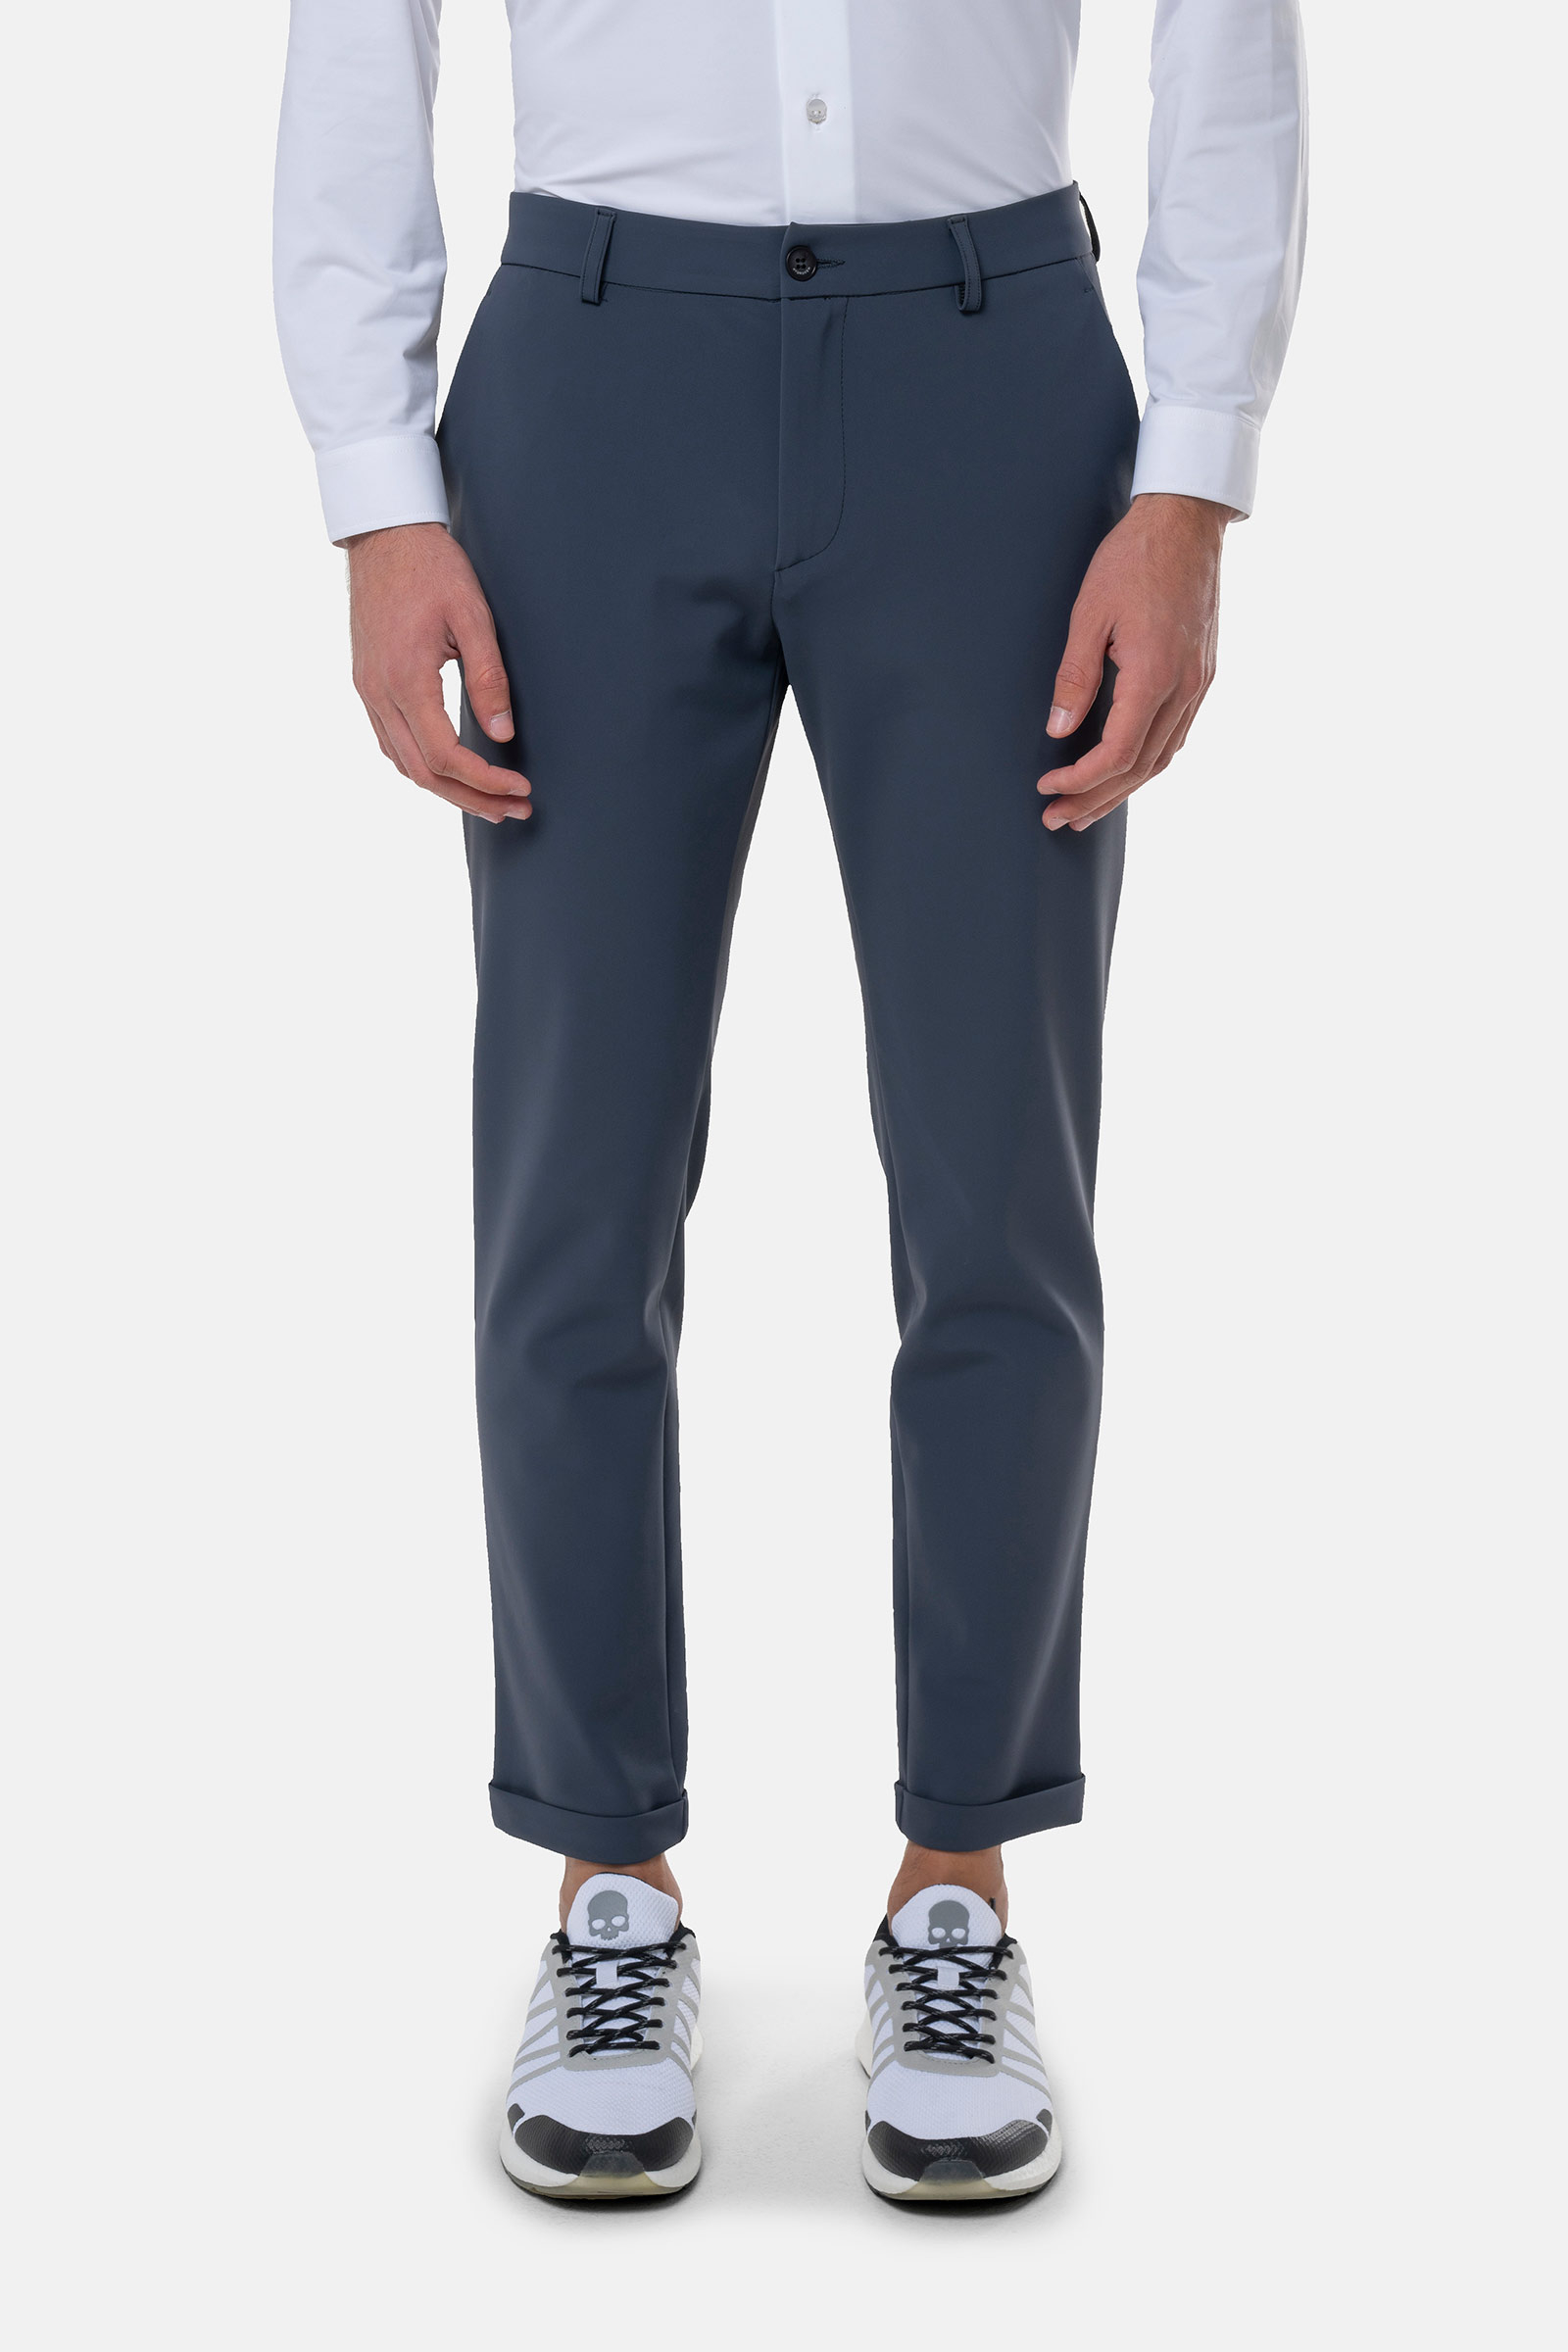 CLASSIC PANTS - Apparel - Hydrogen - Luxury Sportwear